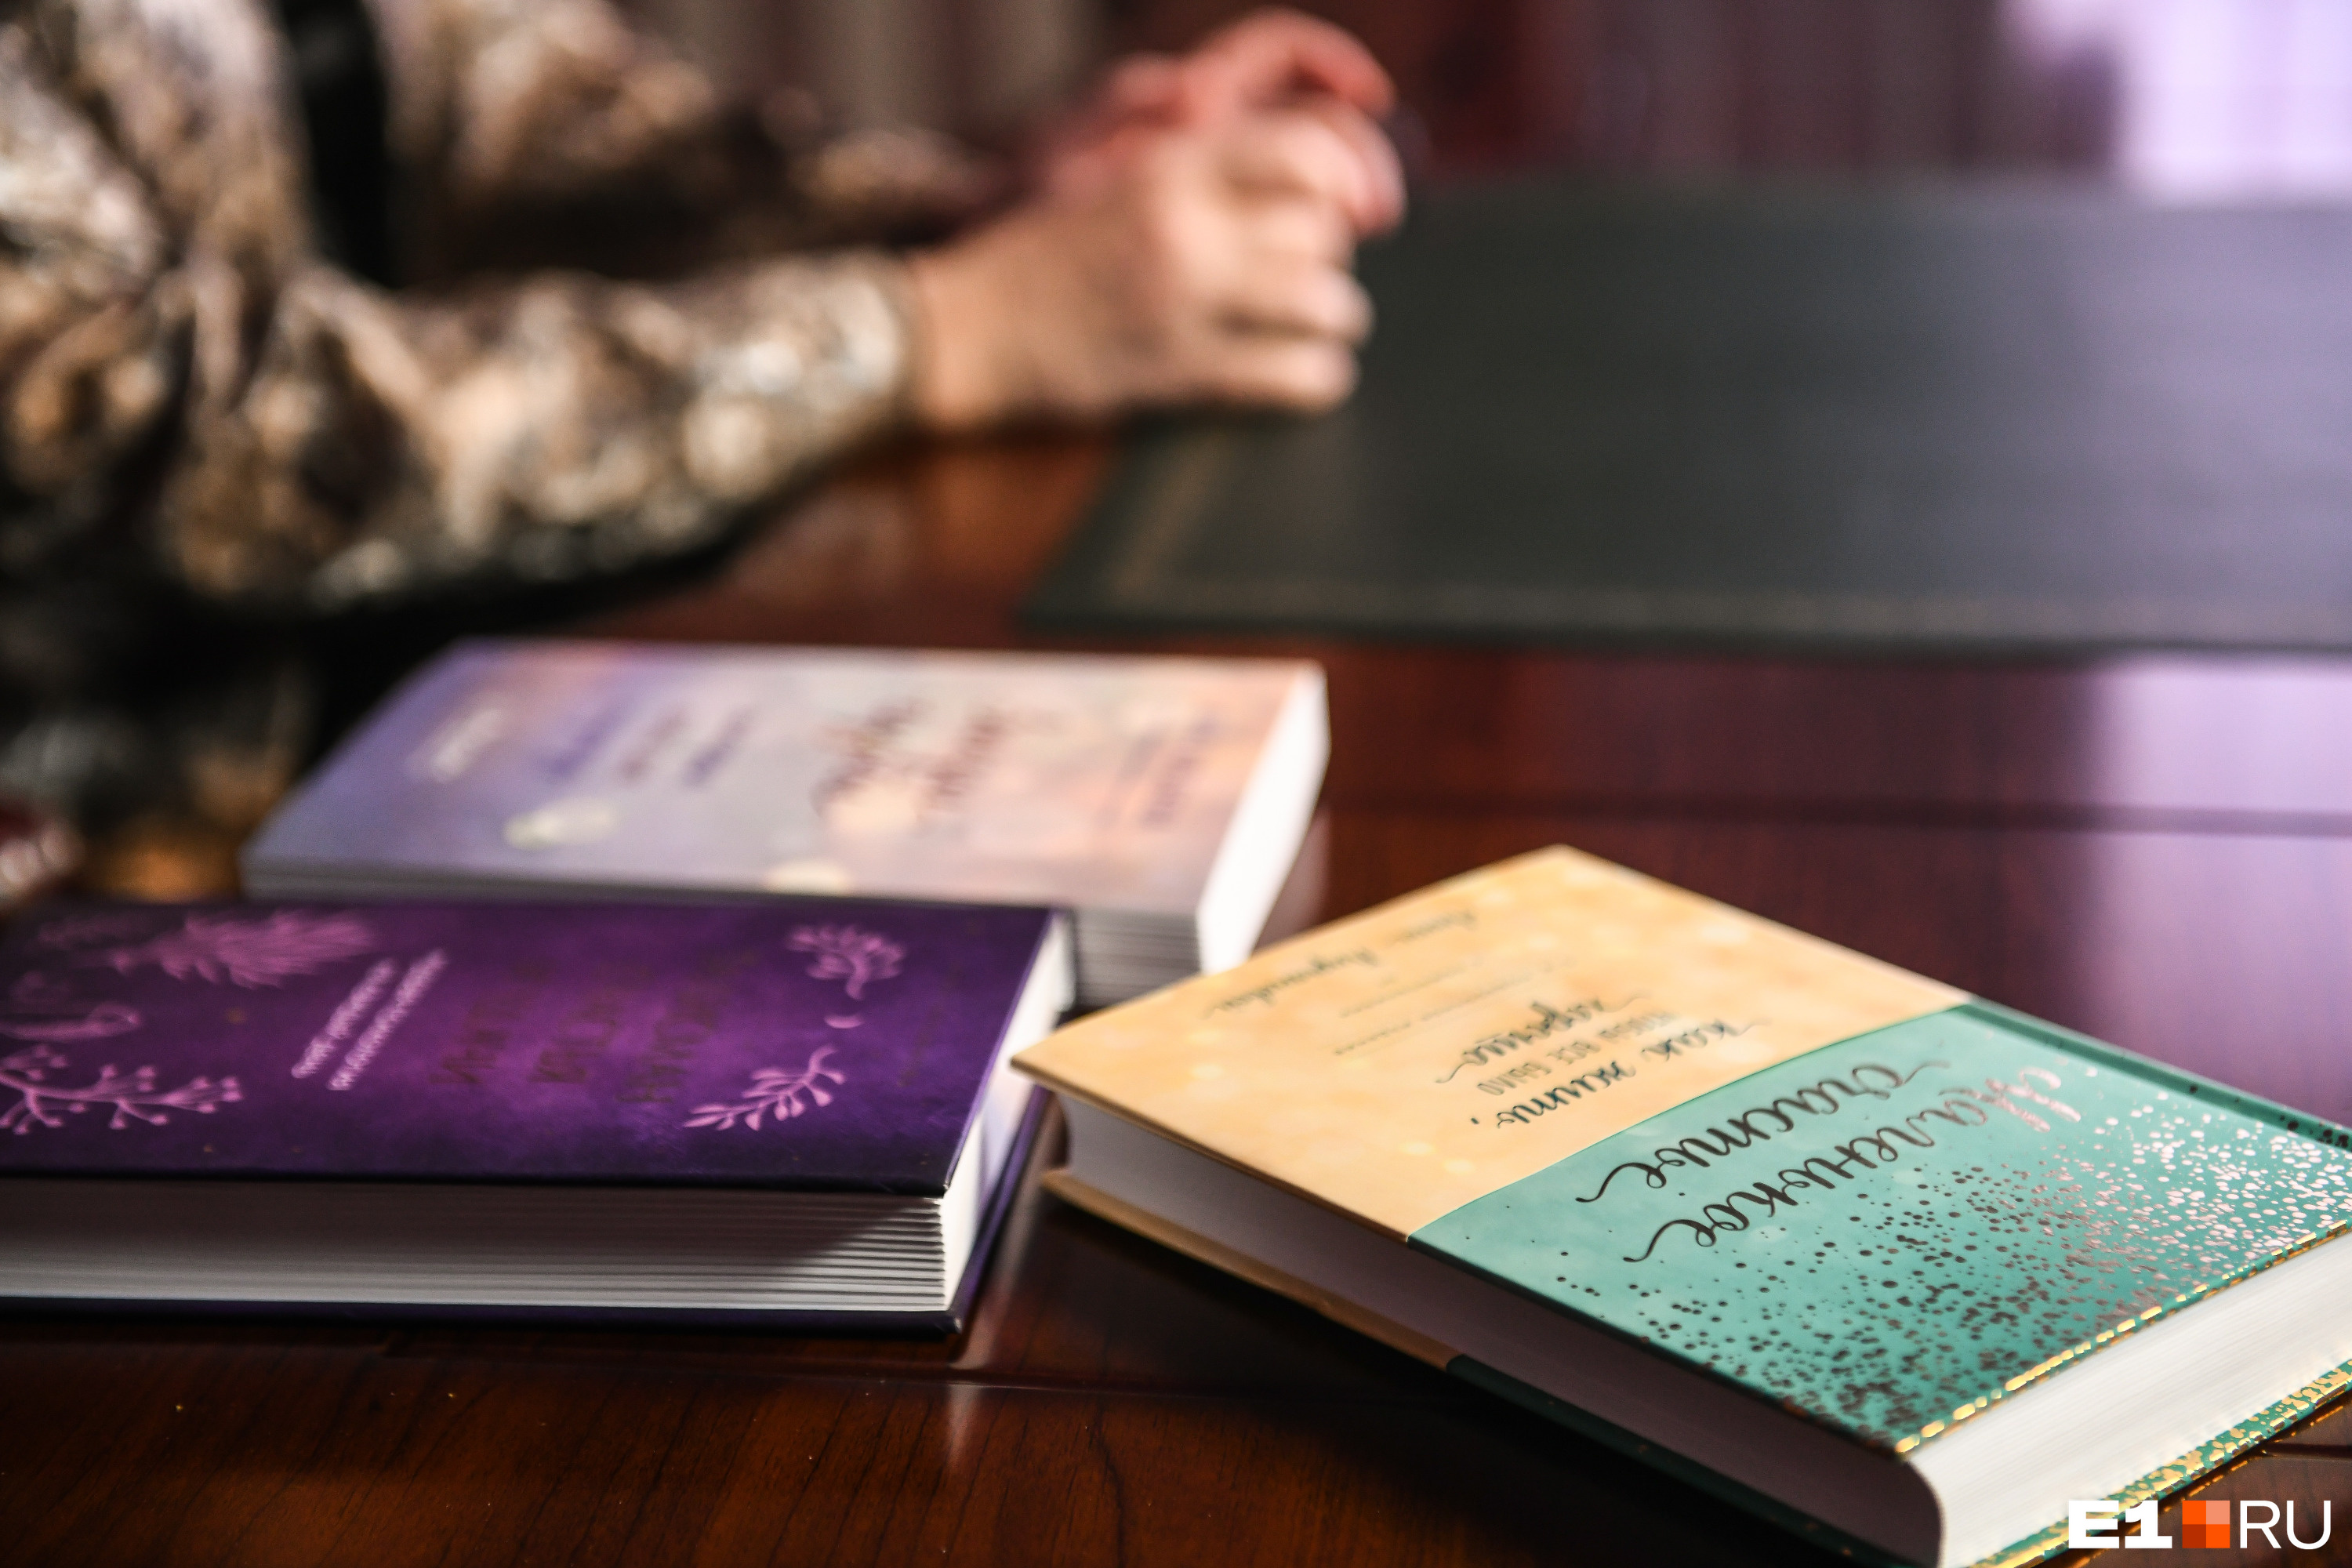 Психолог и философ Анна Кирьянова в 2020 году выпустила несколько новых книг